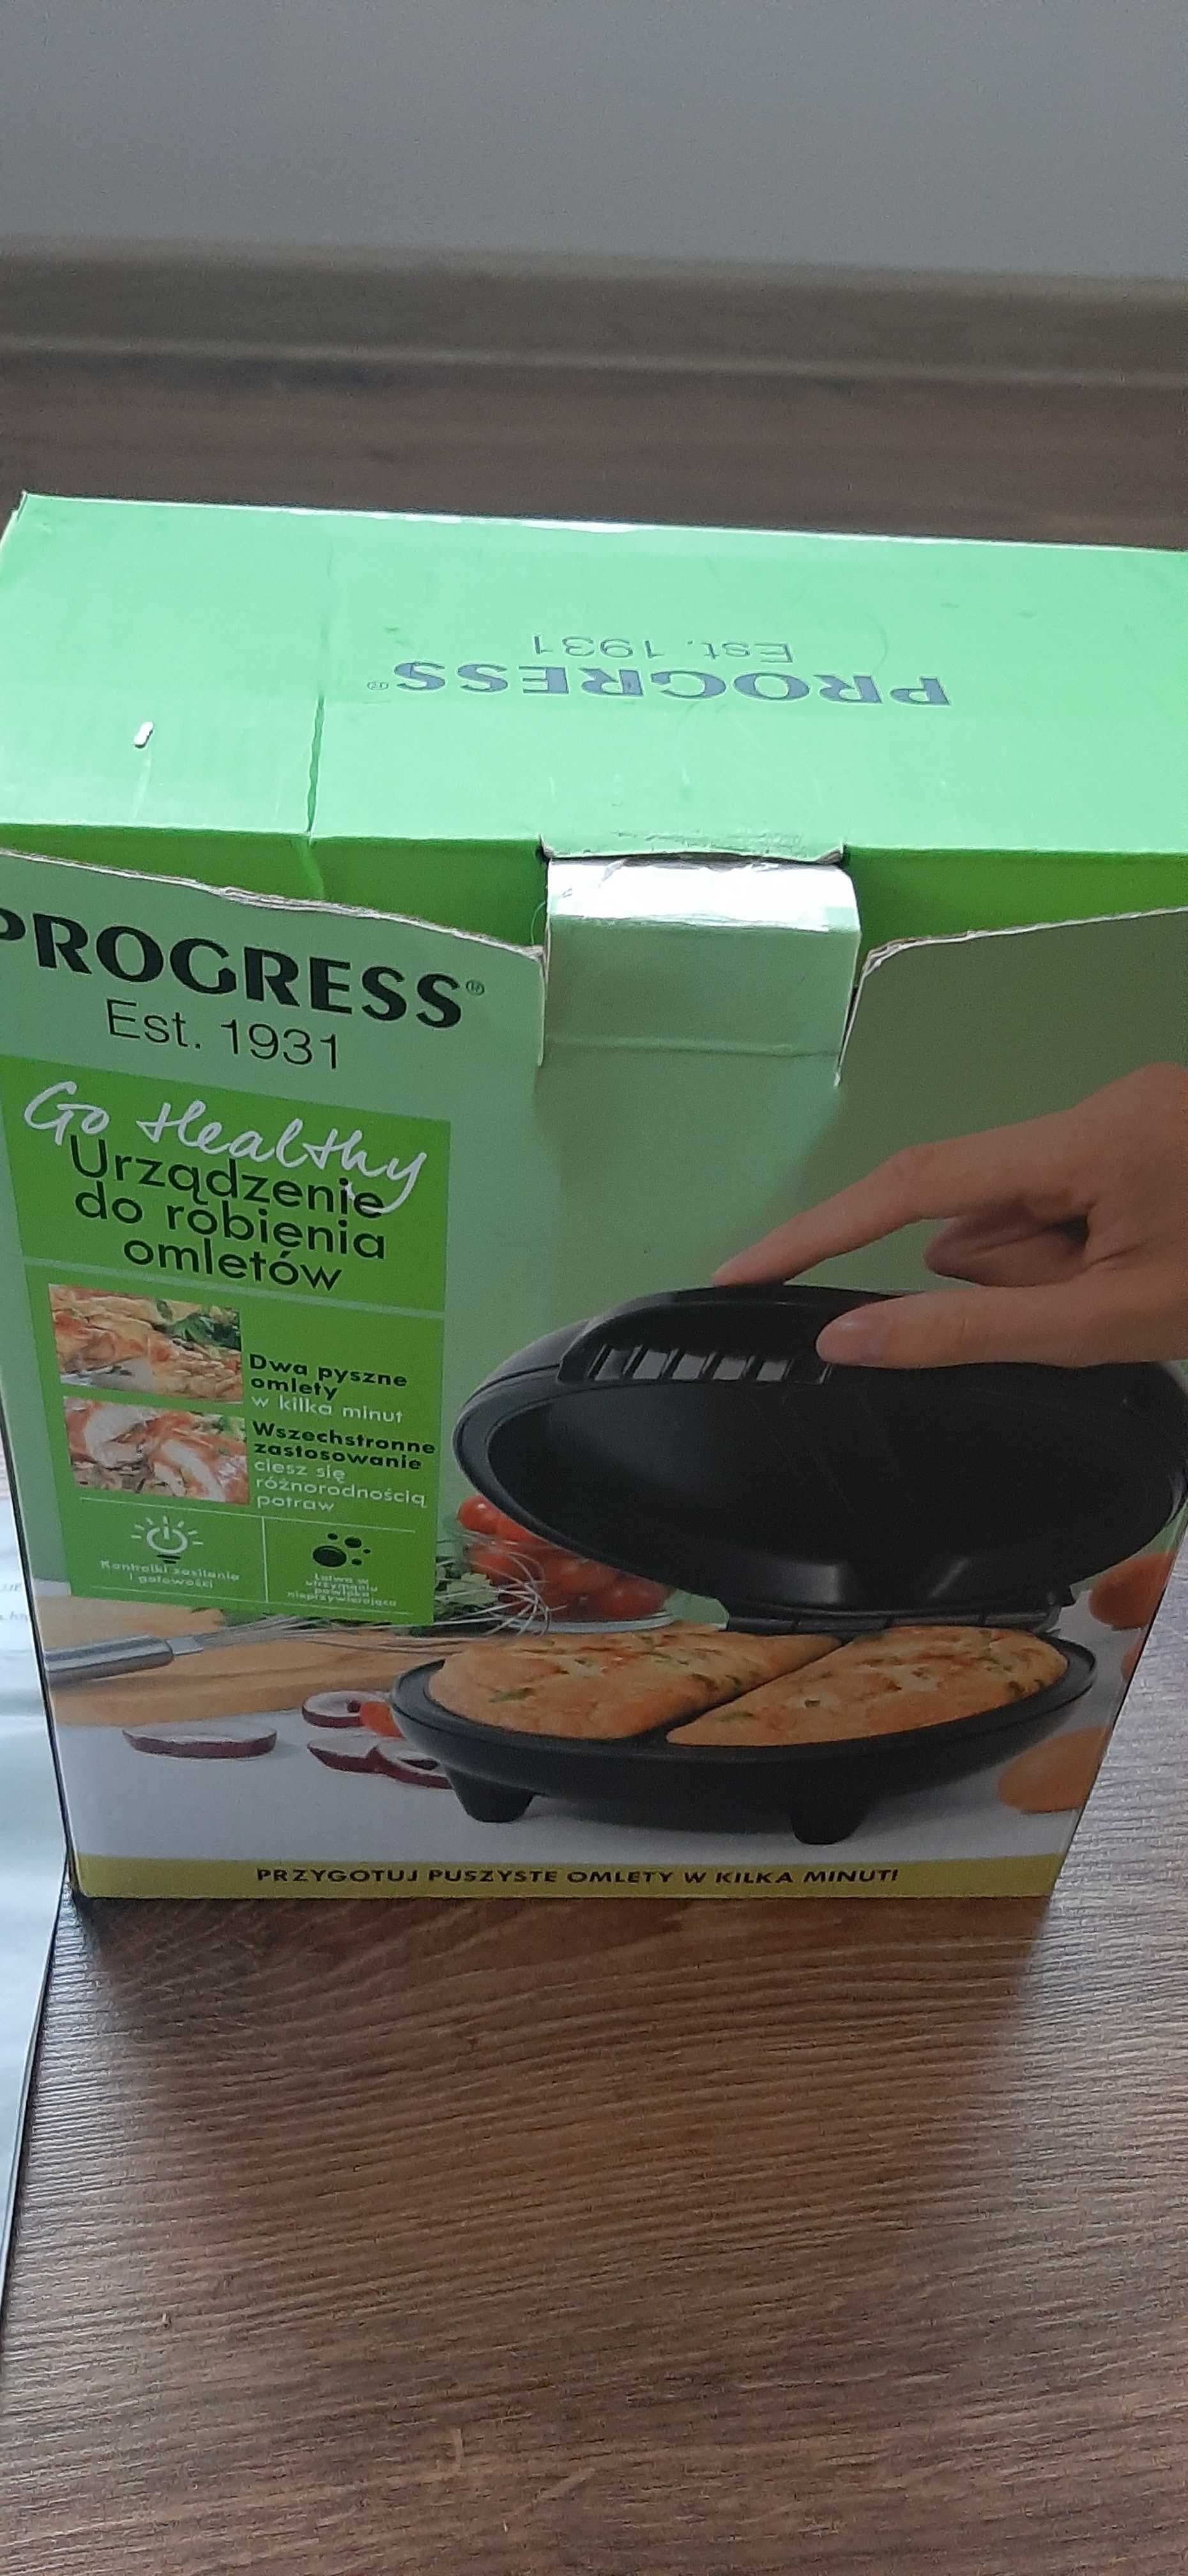 Urzadzenie do robienia omletów  Progress